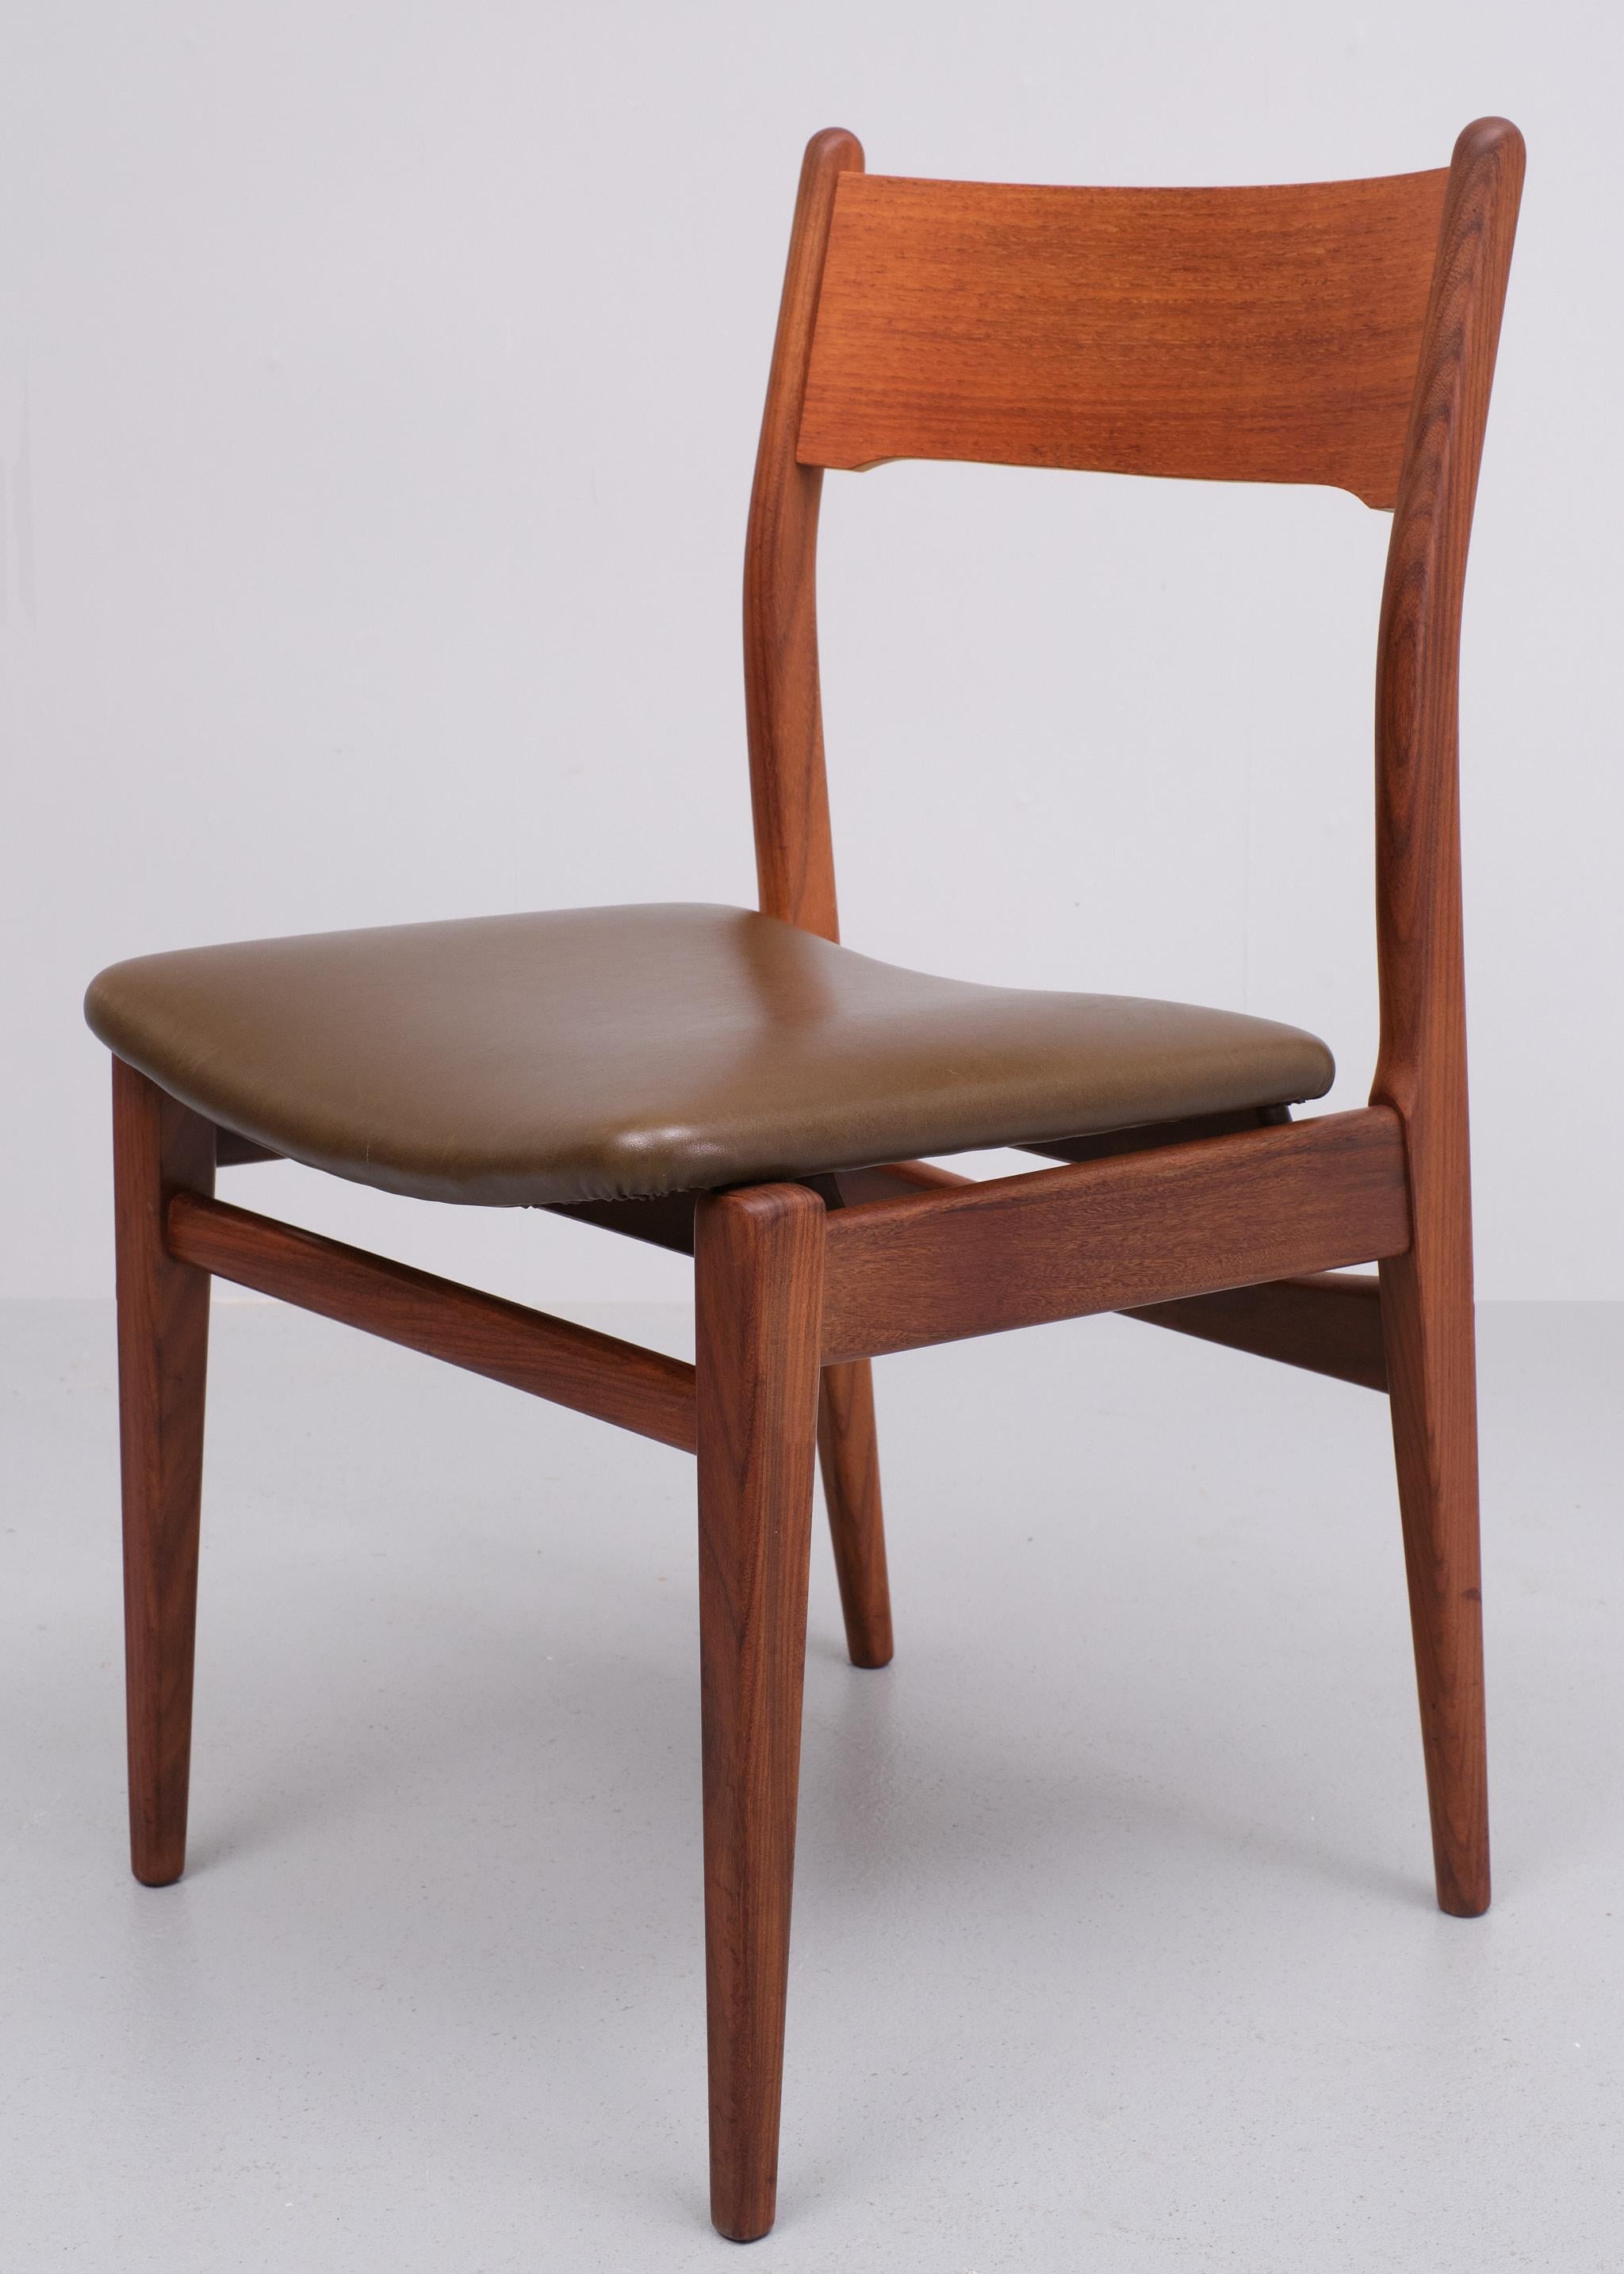 Mid-20th Century Louis van Teeffelen  Teak dining chairs 1960s 